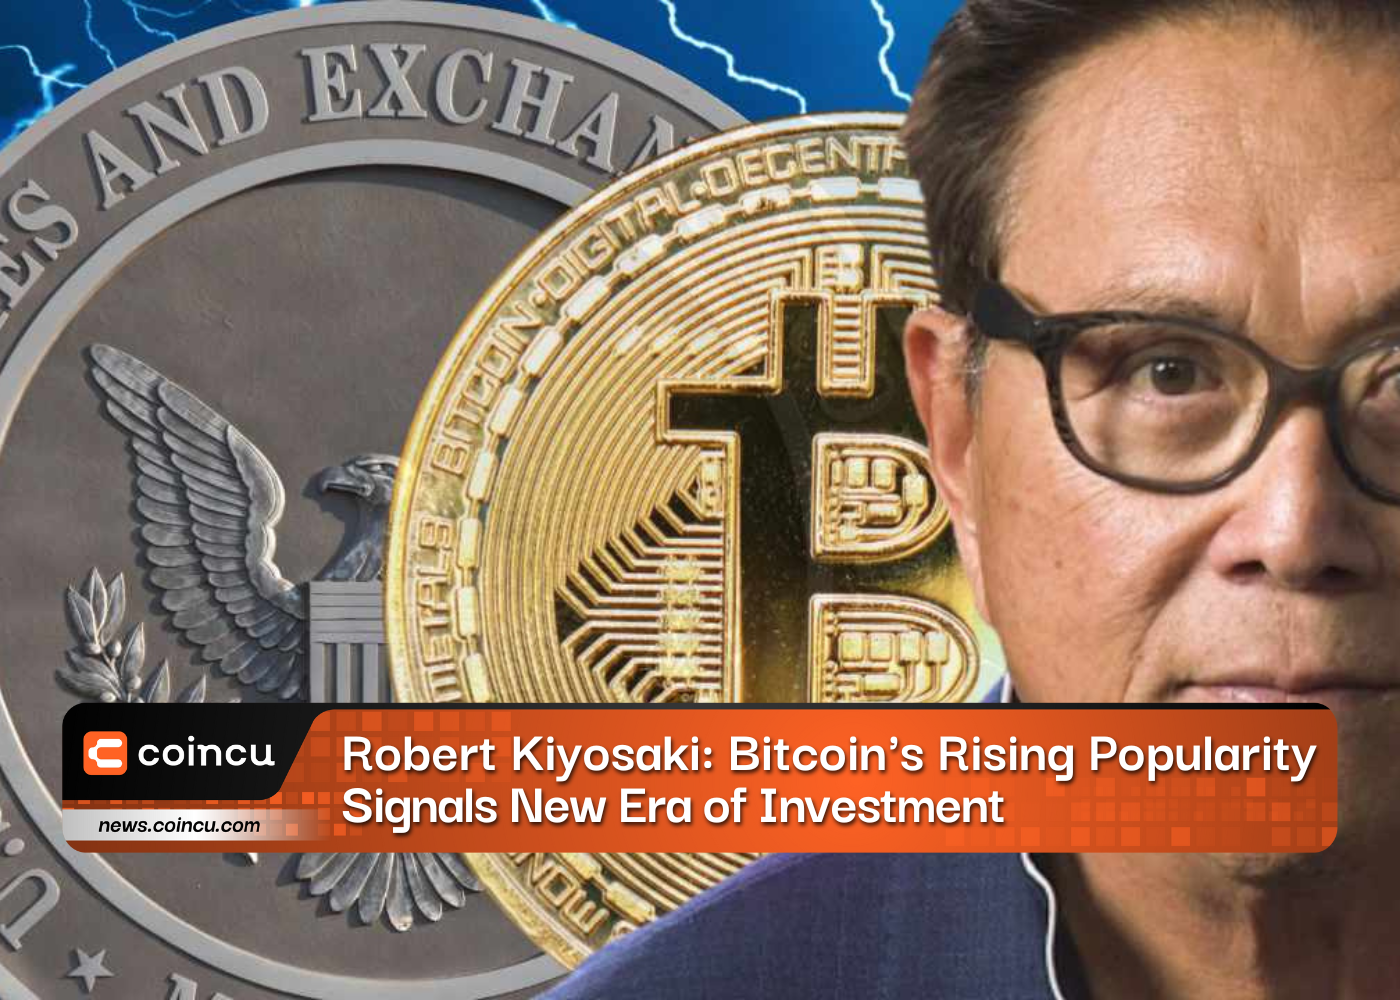 Popularidade crescente dos Bitcoins de Robert Kiyosaki